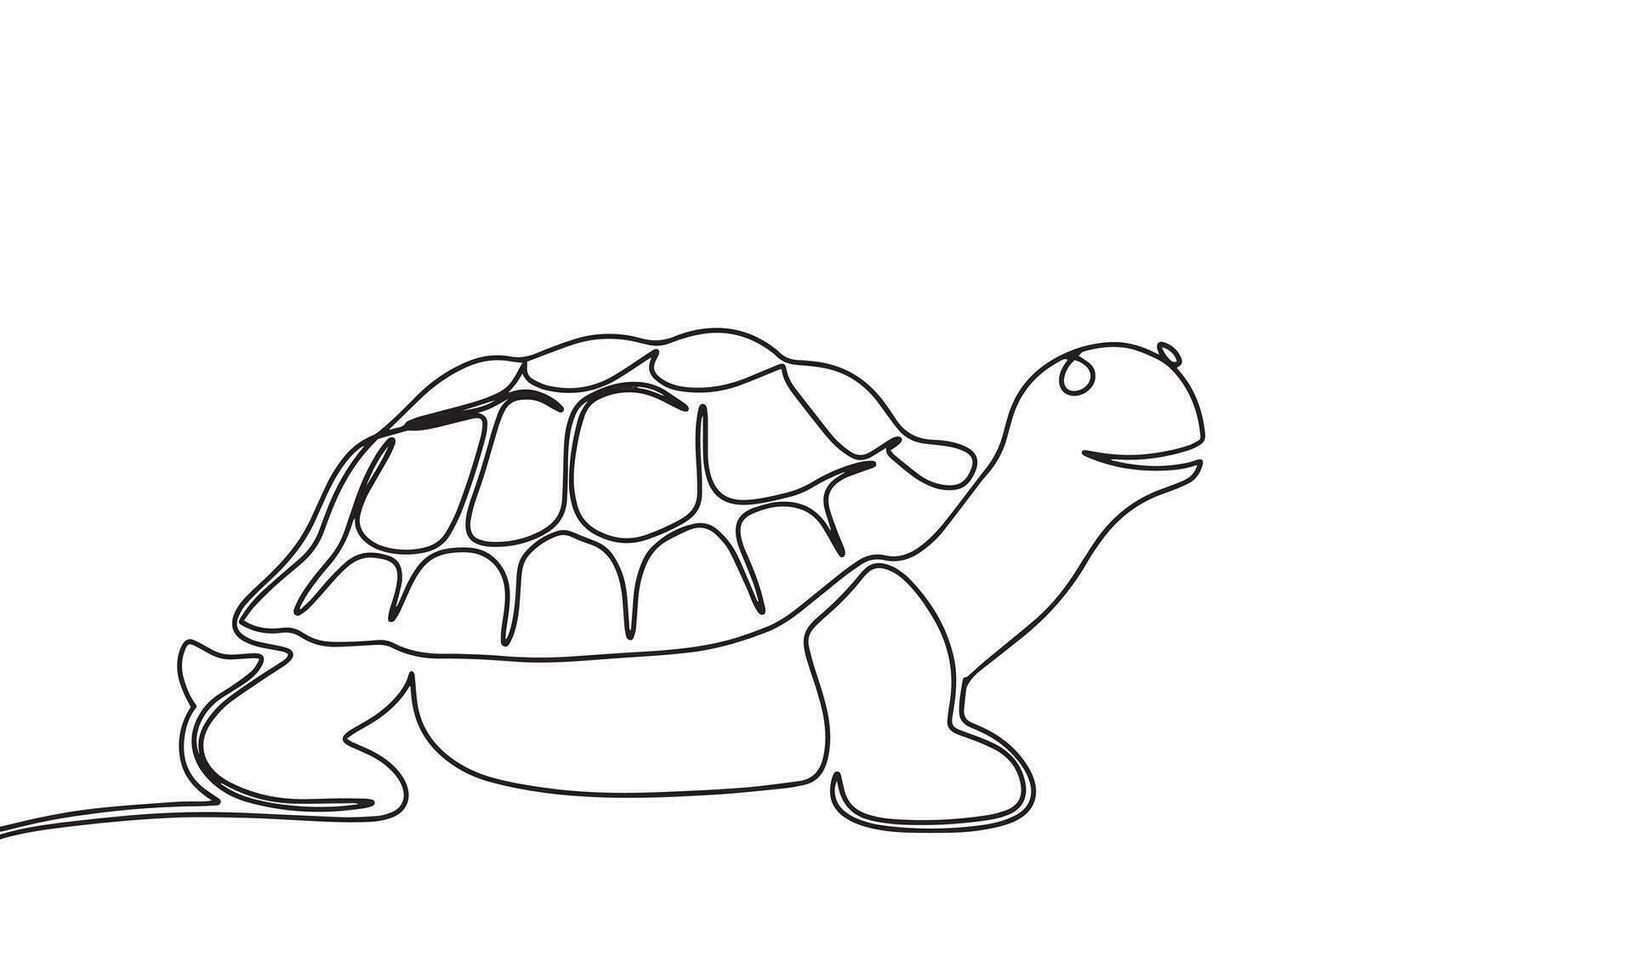 Schildkröte einer Linie kontinuierlich. Linie Kunst, Gliederung isoliert auf Weiß Hintergrund. Vektor Illustration.